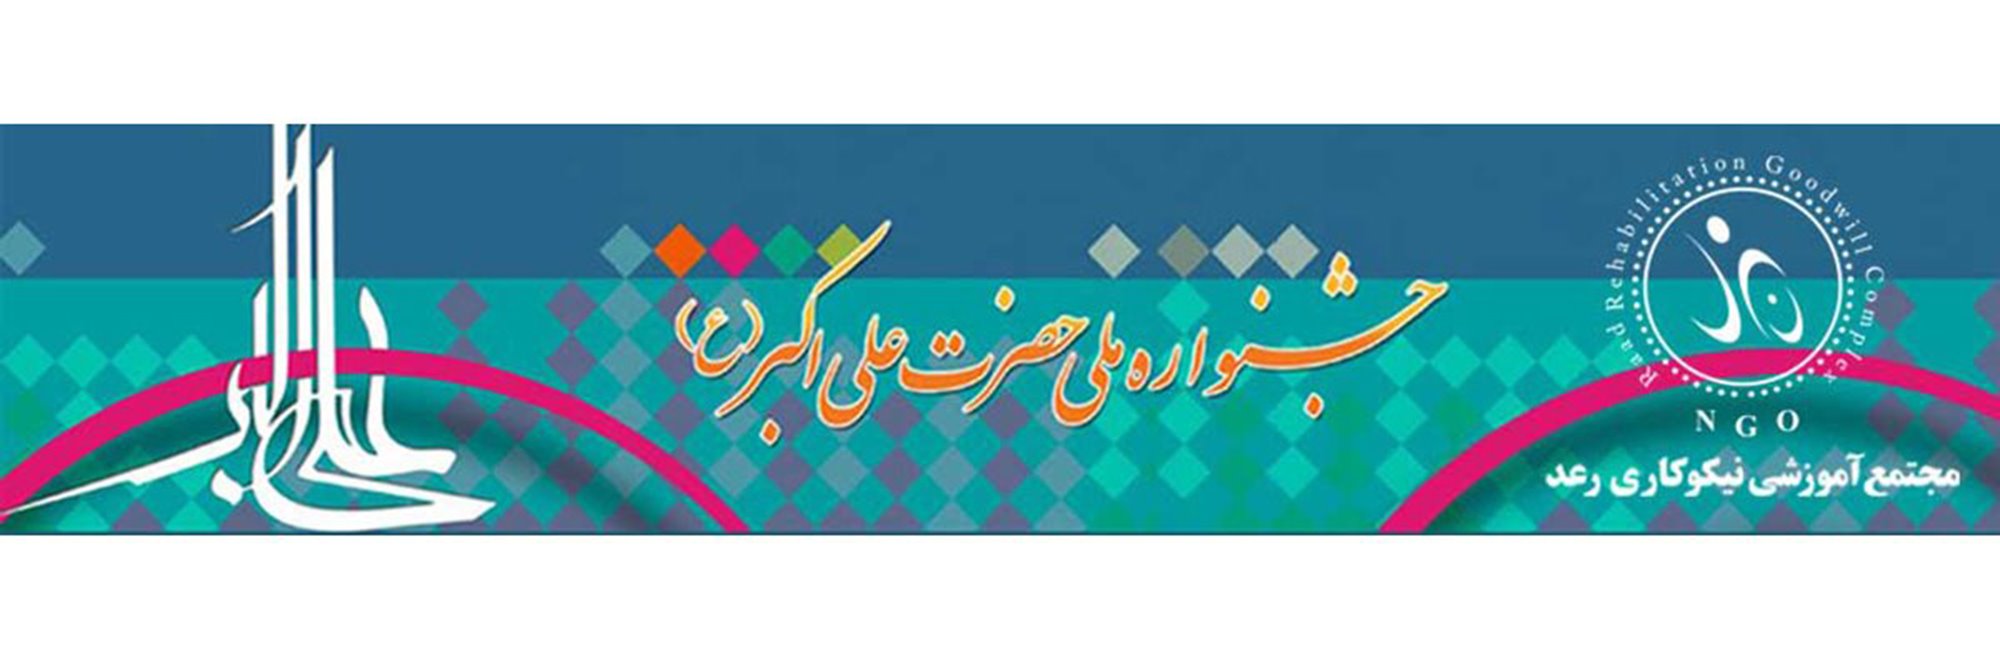 اطلاع رسانی کشوری جشنواره علی اکبر(ع) برای انتخاب معلولان موفق انجام شد